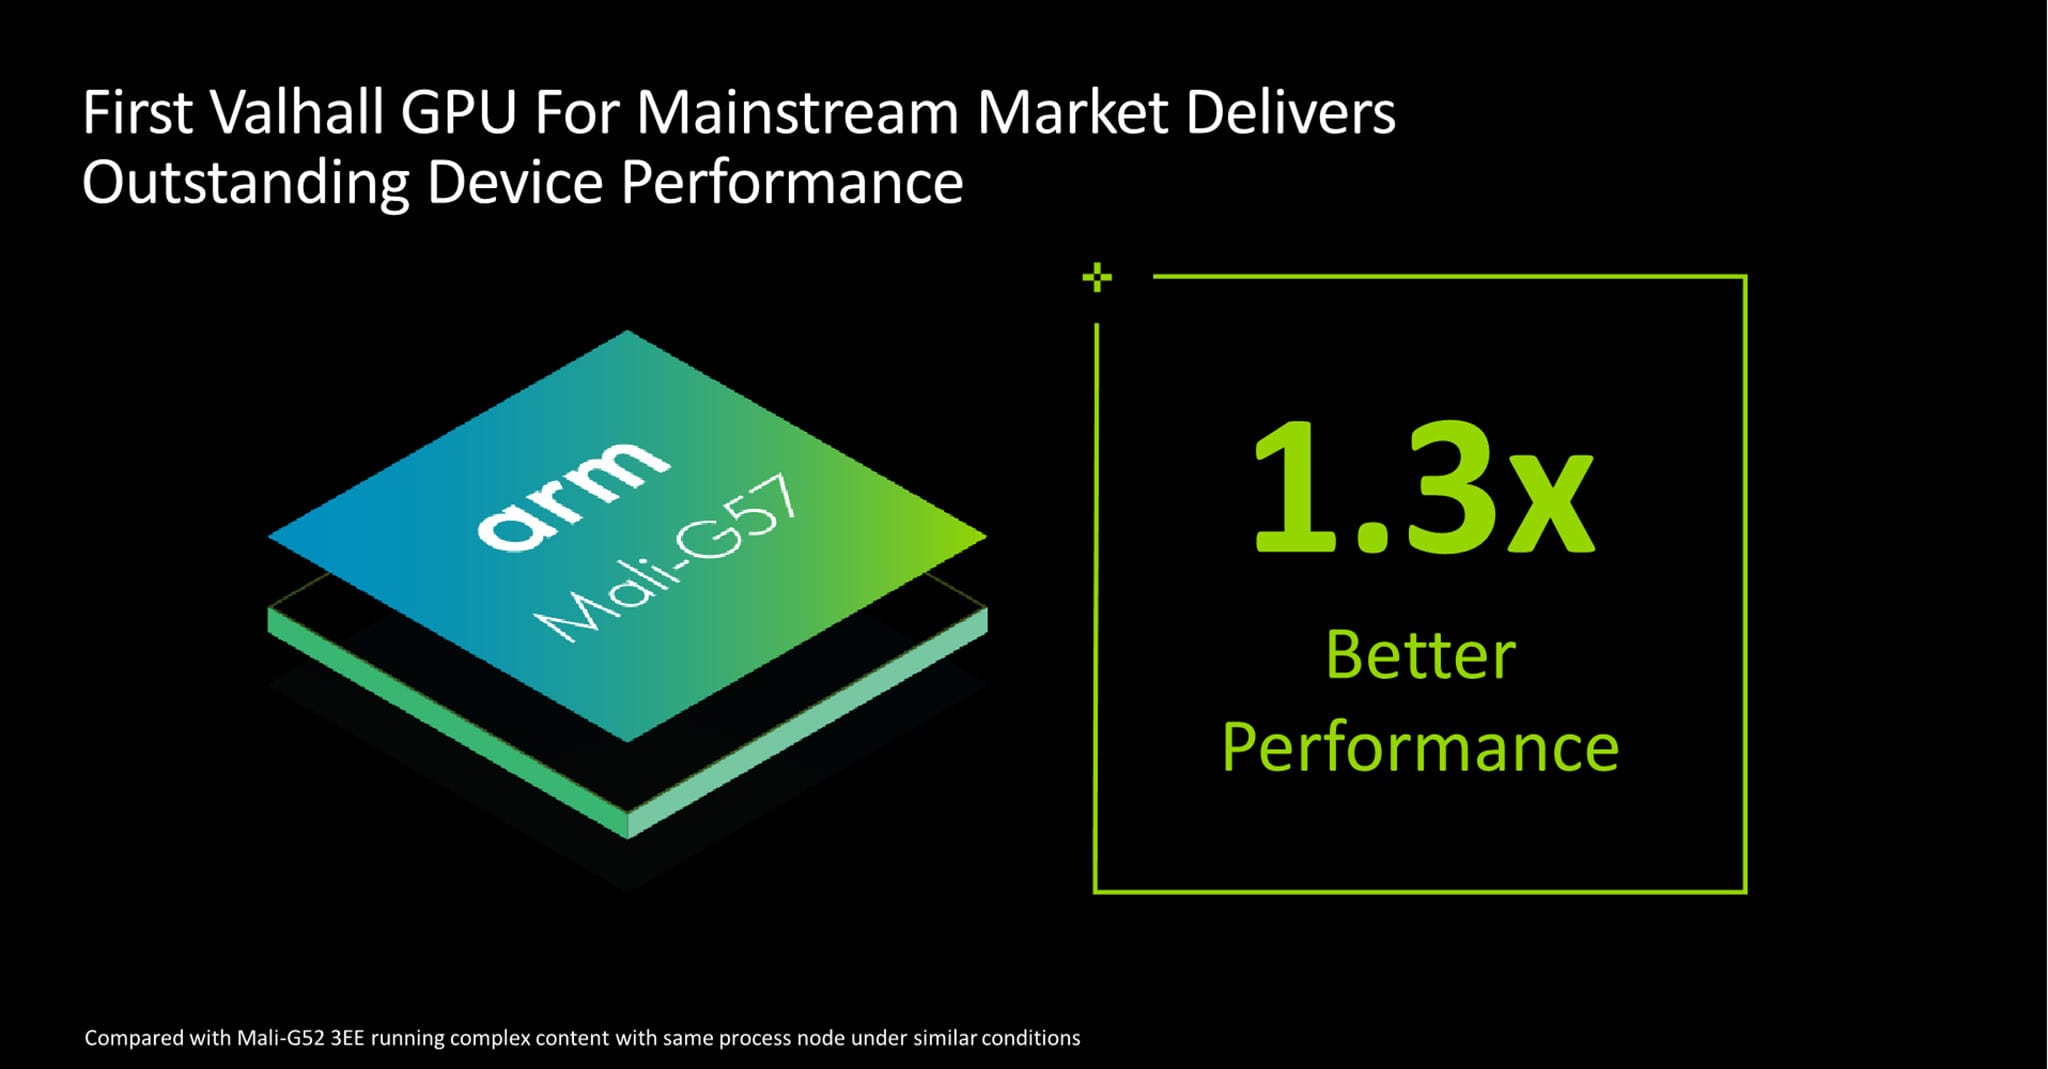 شركة ARM تعلن رسمياً عن أربع شرائح جديدة مميزة بآداء أعلى وبكفاءة ممتازة